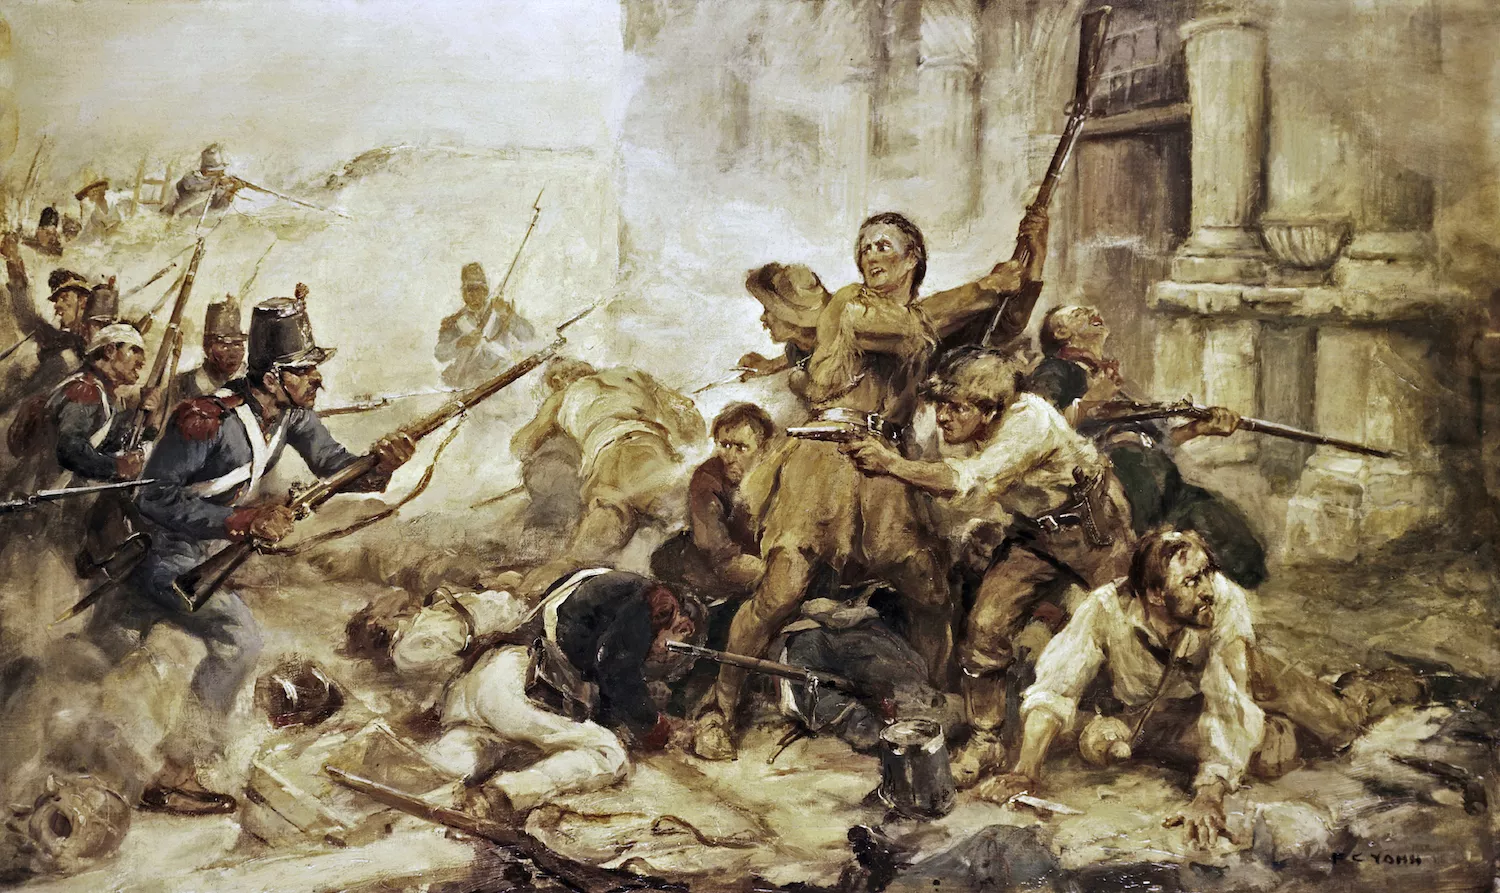 A la batalla d'El Álamo 187 homes van plantar cara a 4.000 soldats després d’un setge de dotze dies, i van morir tots: la llegenda estava servida